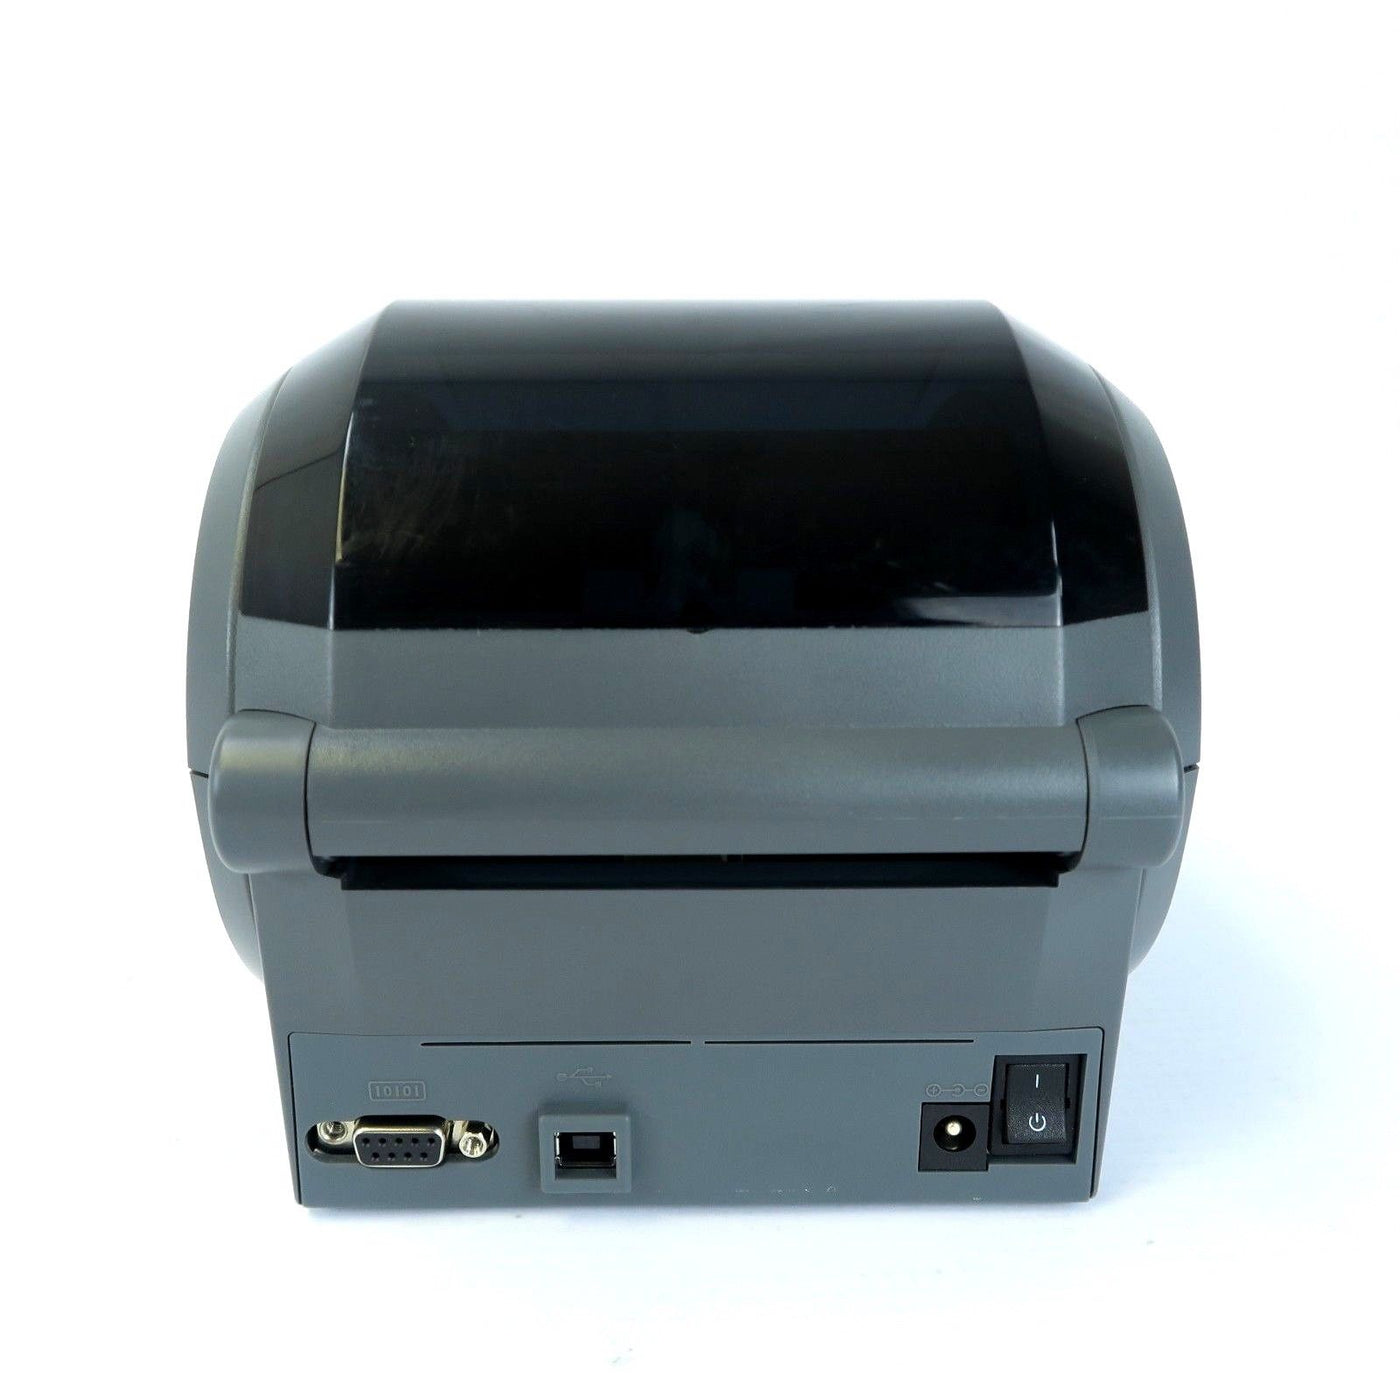 Zebra GK420d Thermal Label Printer - USB / Serial (GK420d Ref)